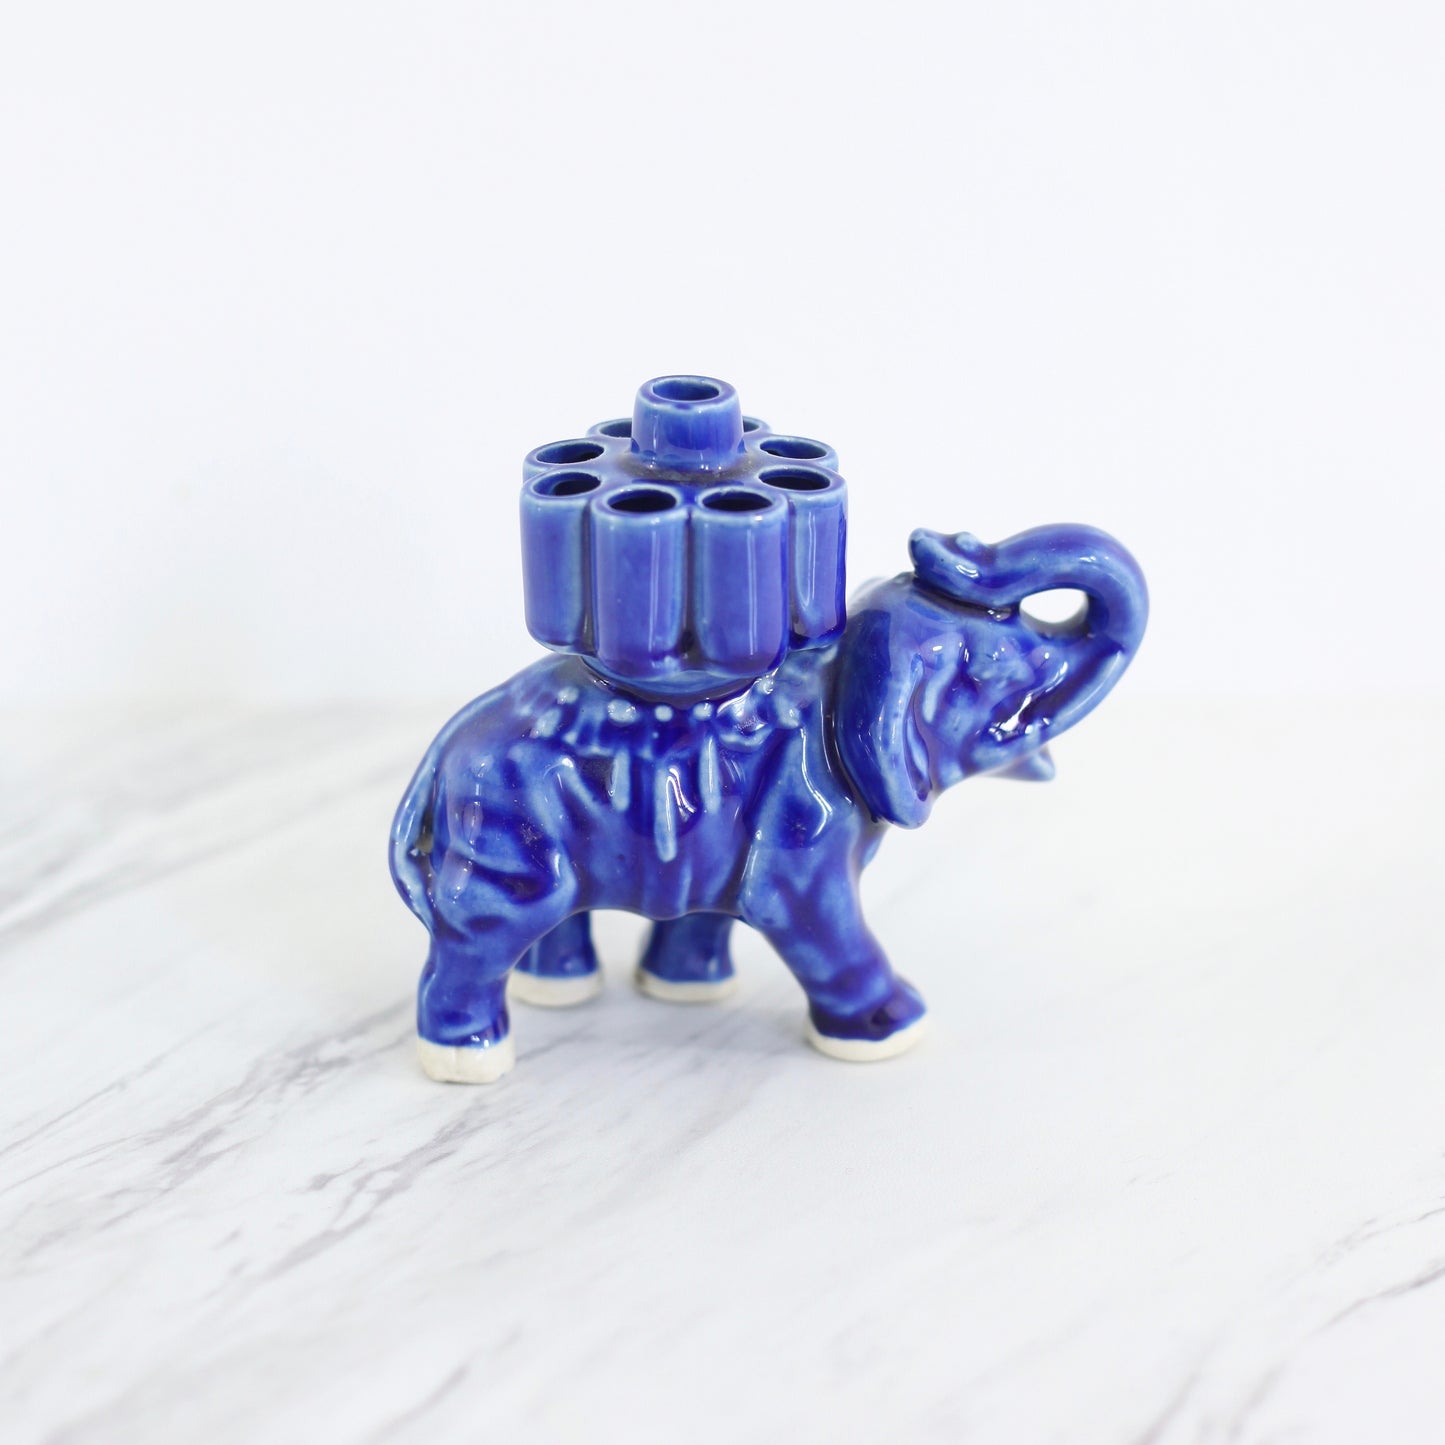 SOLD - Vintage 1940s Blue Ceramic Elephant Cigarette Holder